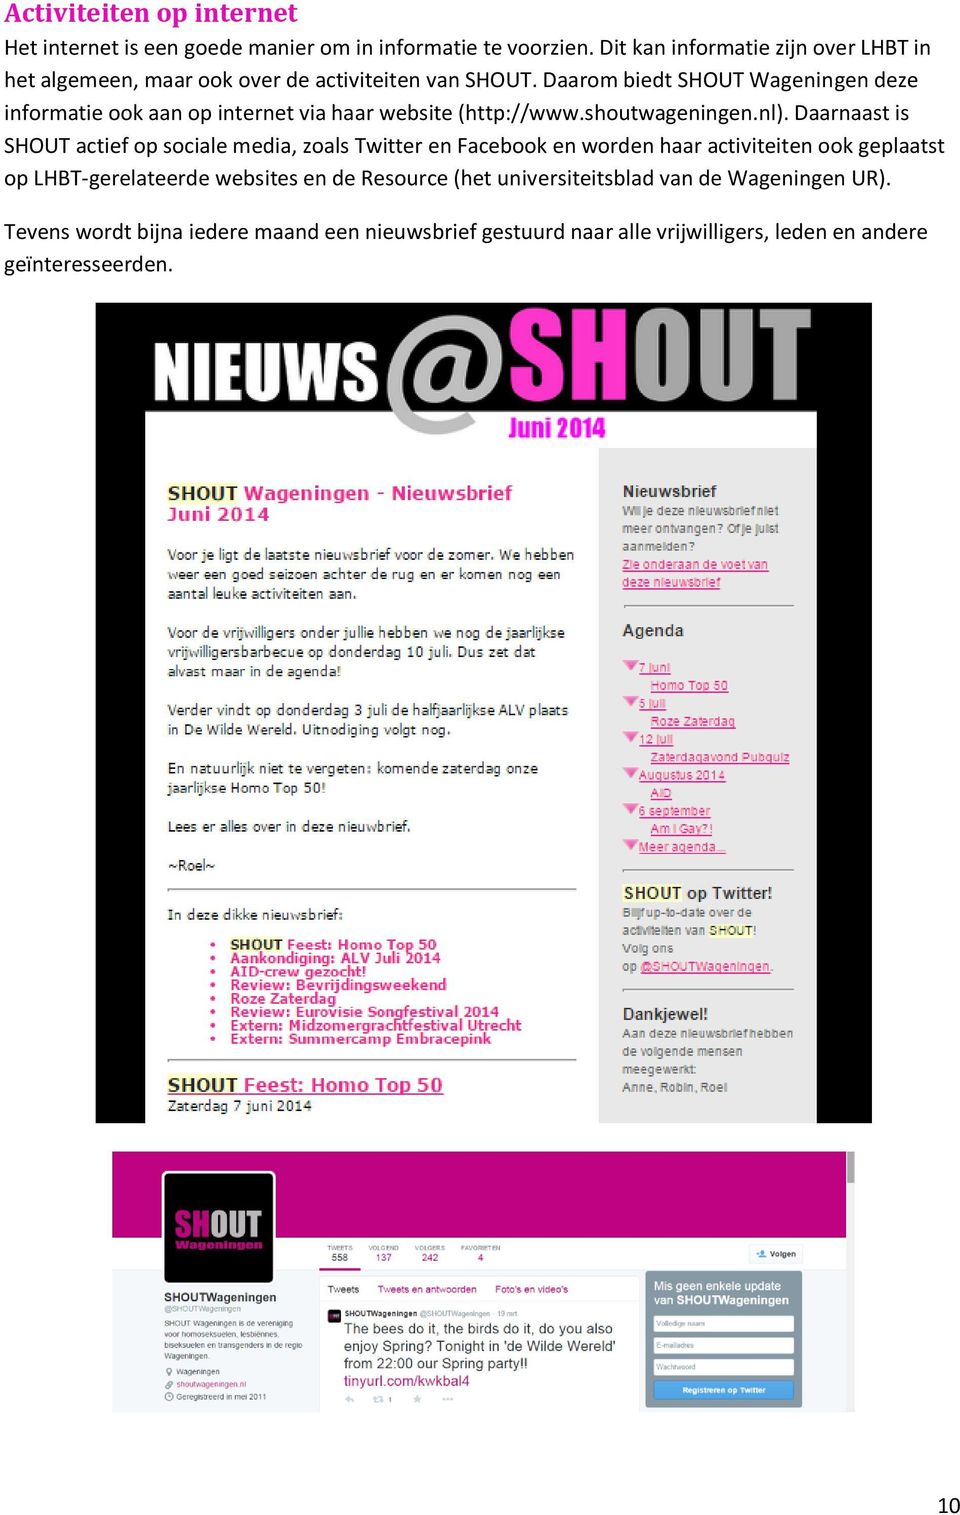 Daarom biedt SHOUT Wageningen deze informatie ook aan op internet via haar website (http://www.shoutwageningen.nl).